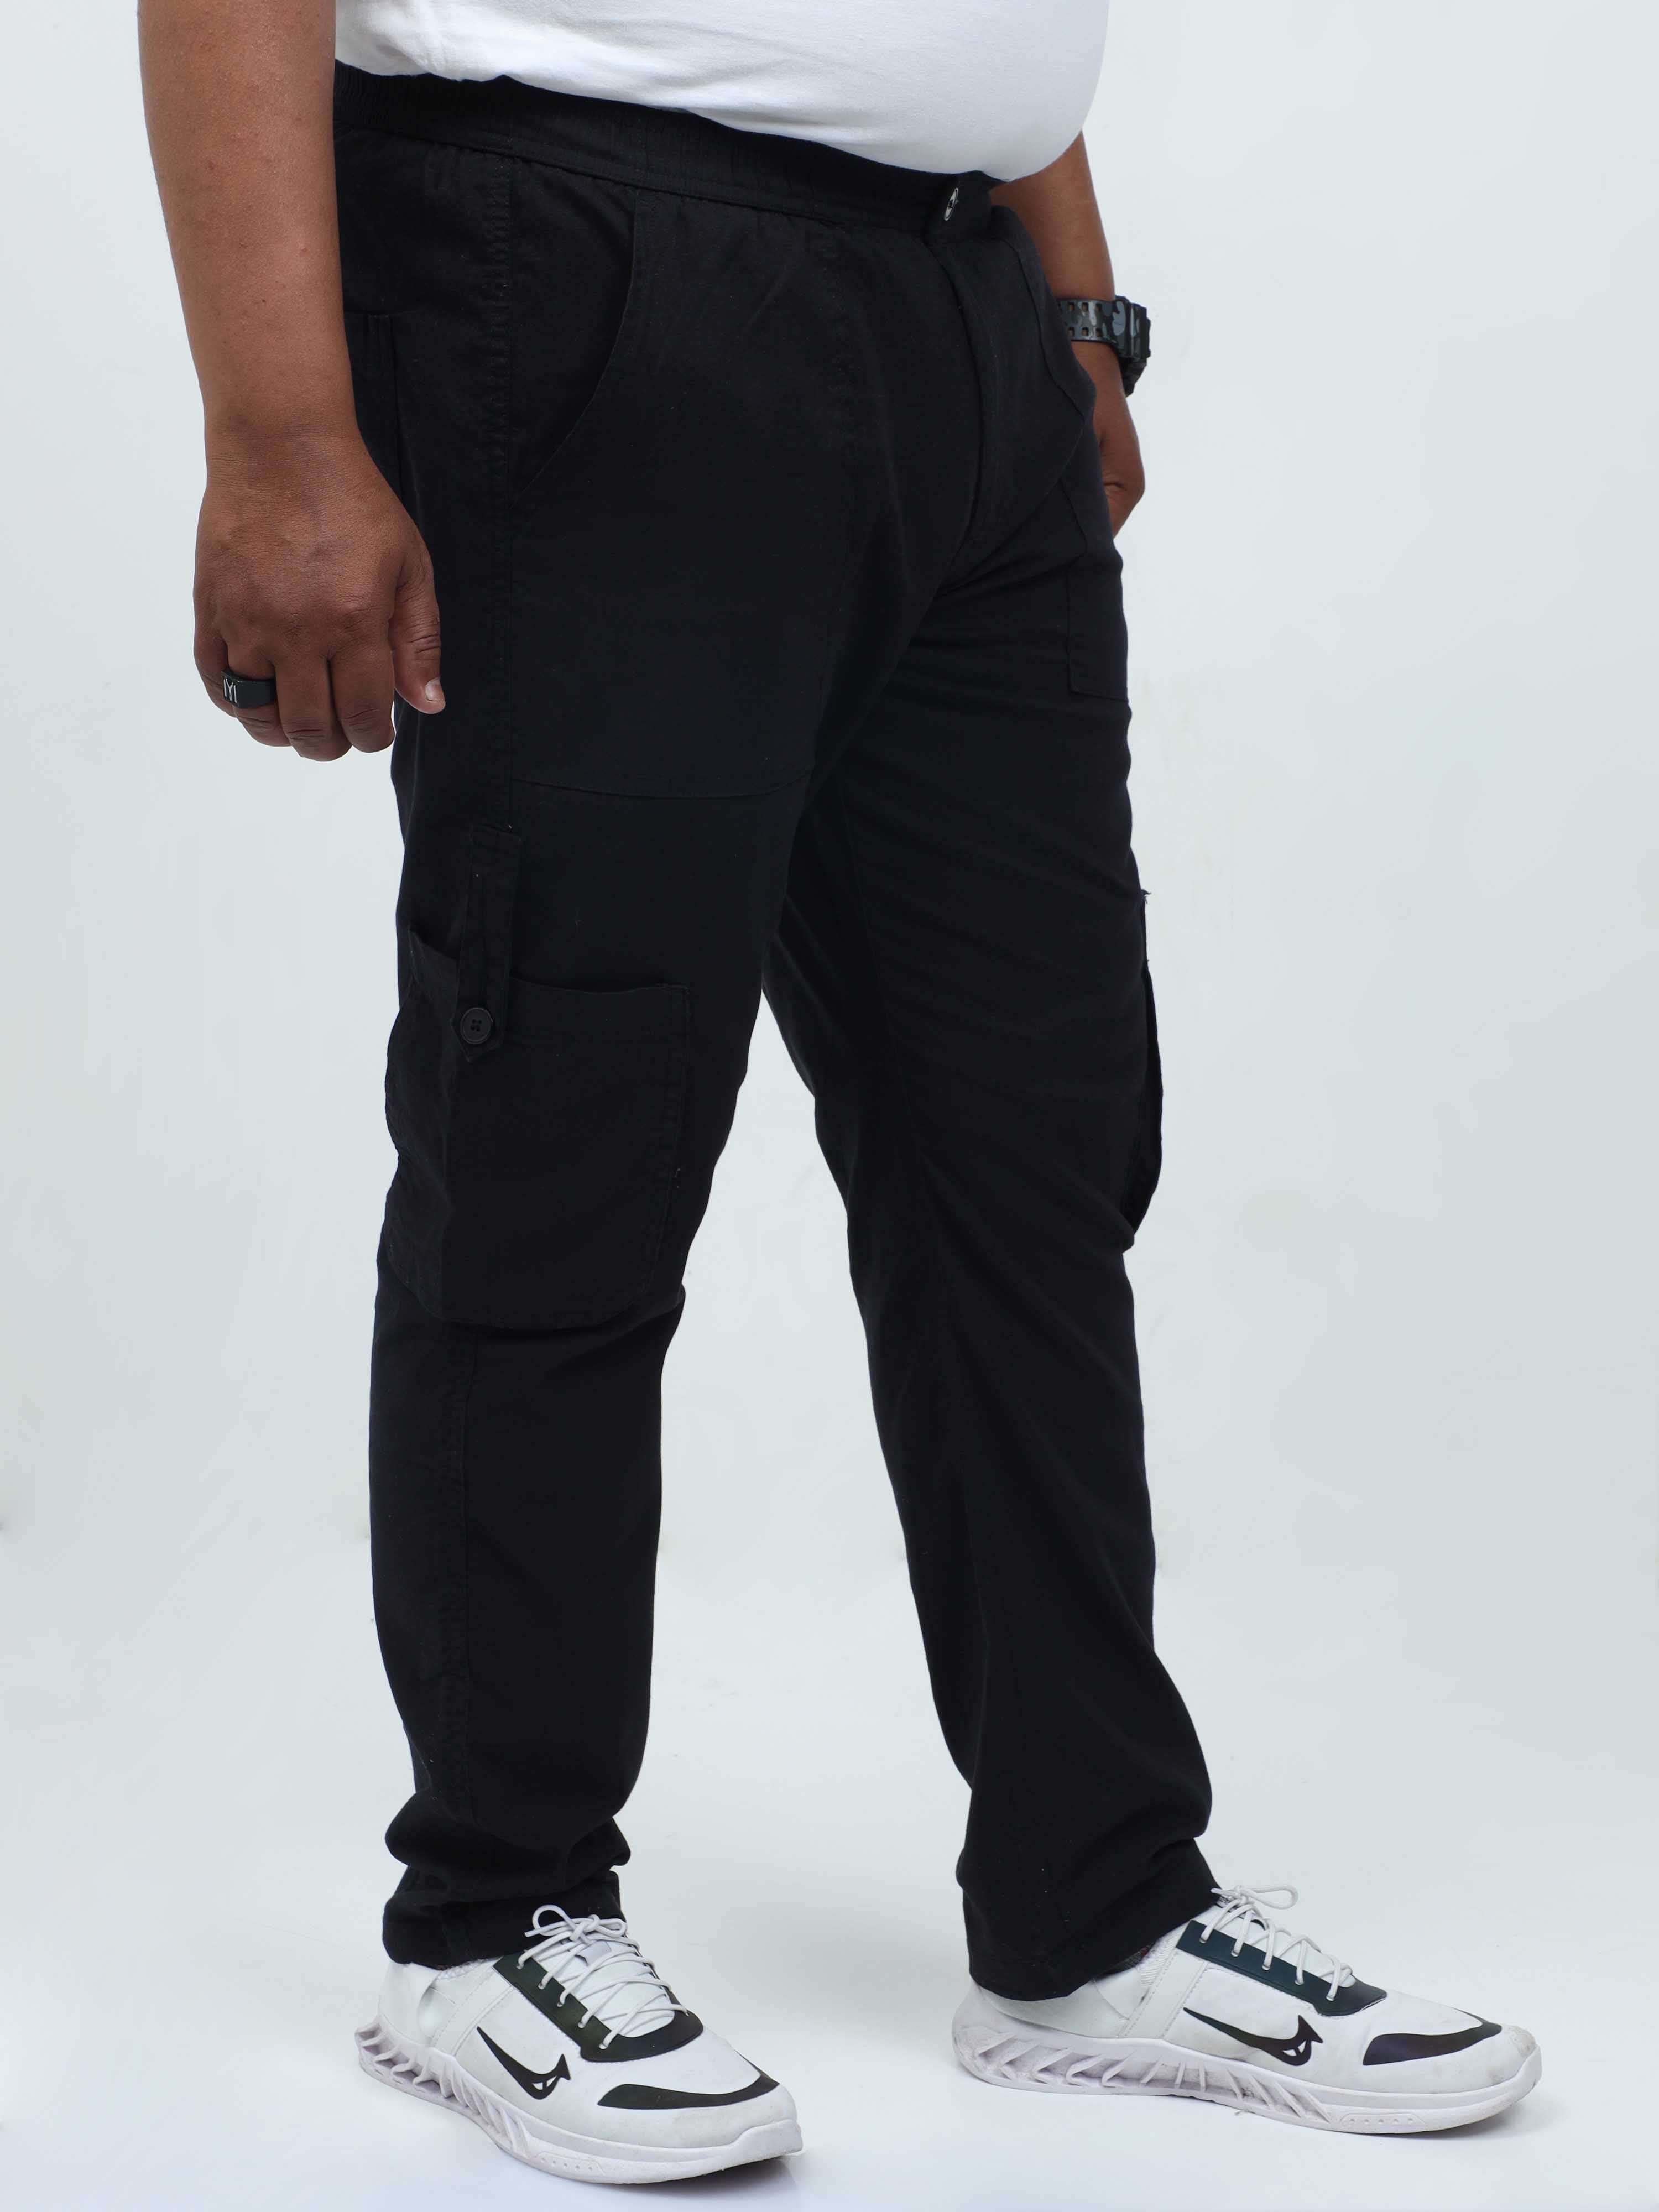 Fashion (Black)Black Cargo Pants Men Sweatpants Men's Working Pants  Overalls Casual Trouser Pantalon Homme CS ACU @ Best Price Online | Jumia  Egypt